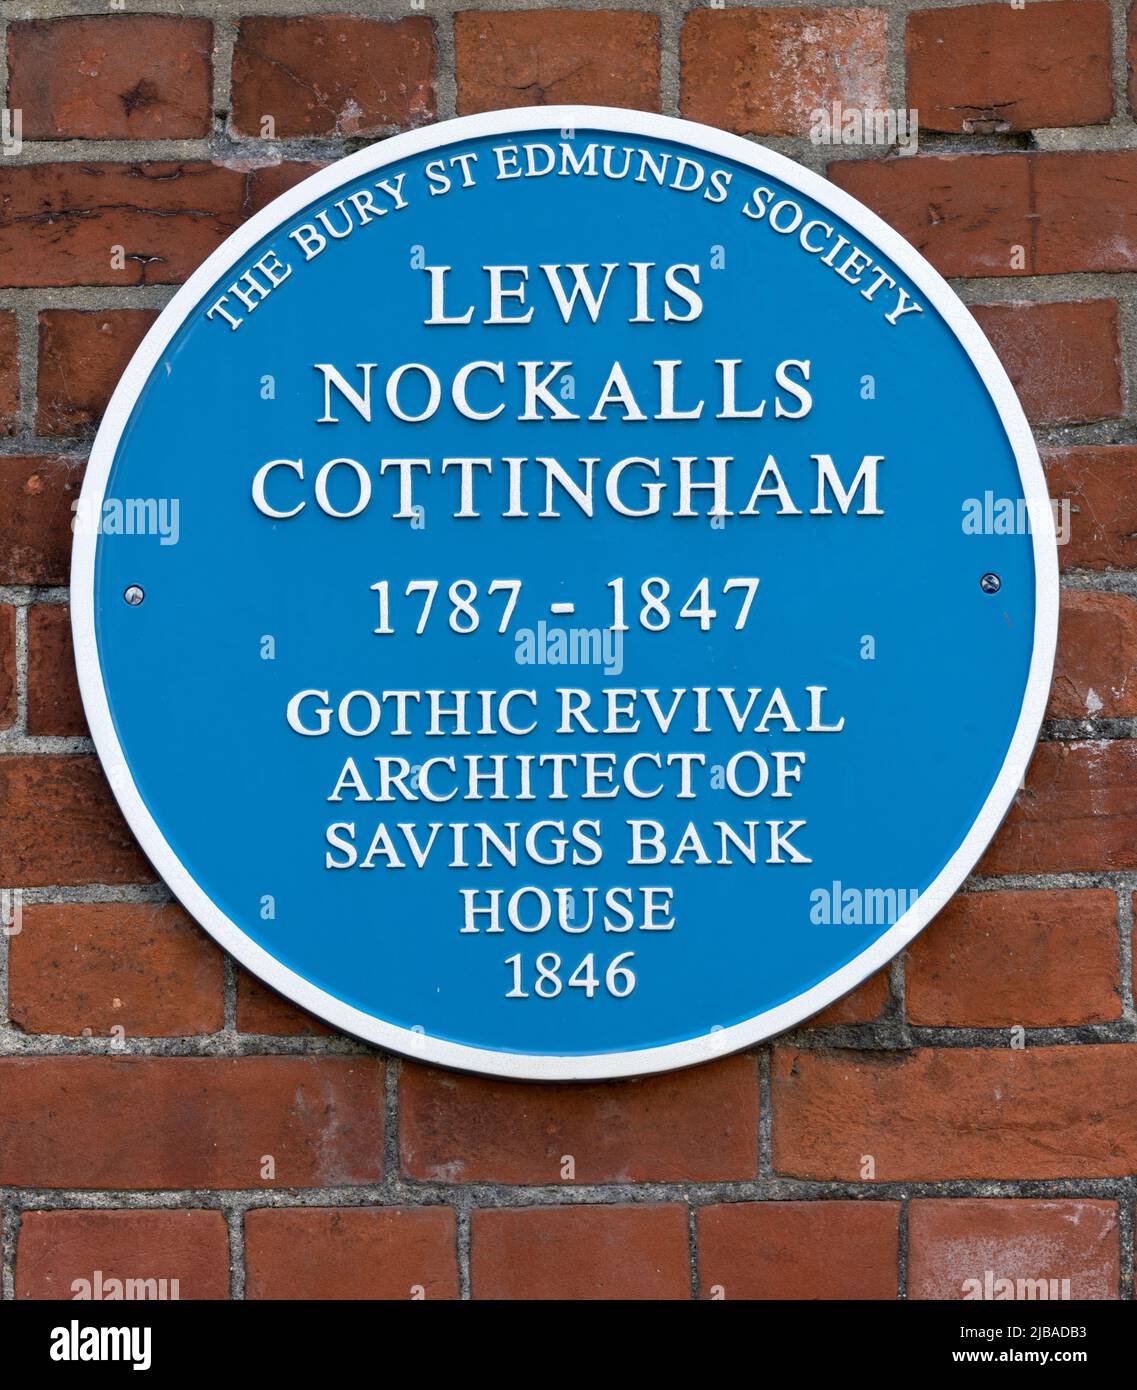 Blaue Tafel im Norman Tower zur Feier von Lewis Nockalls Cottingham, einem Architekten, Lewis Nockalls Cottingham , Suffolk, England, Großbritannien Stockfoto